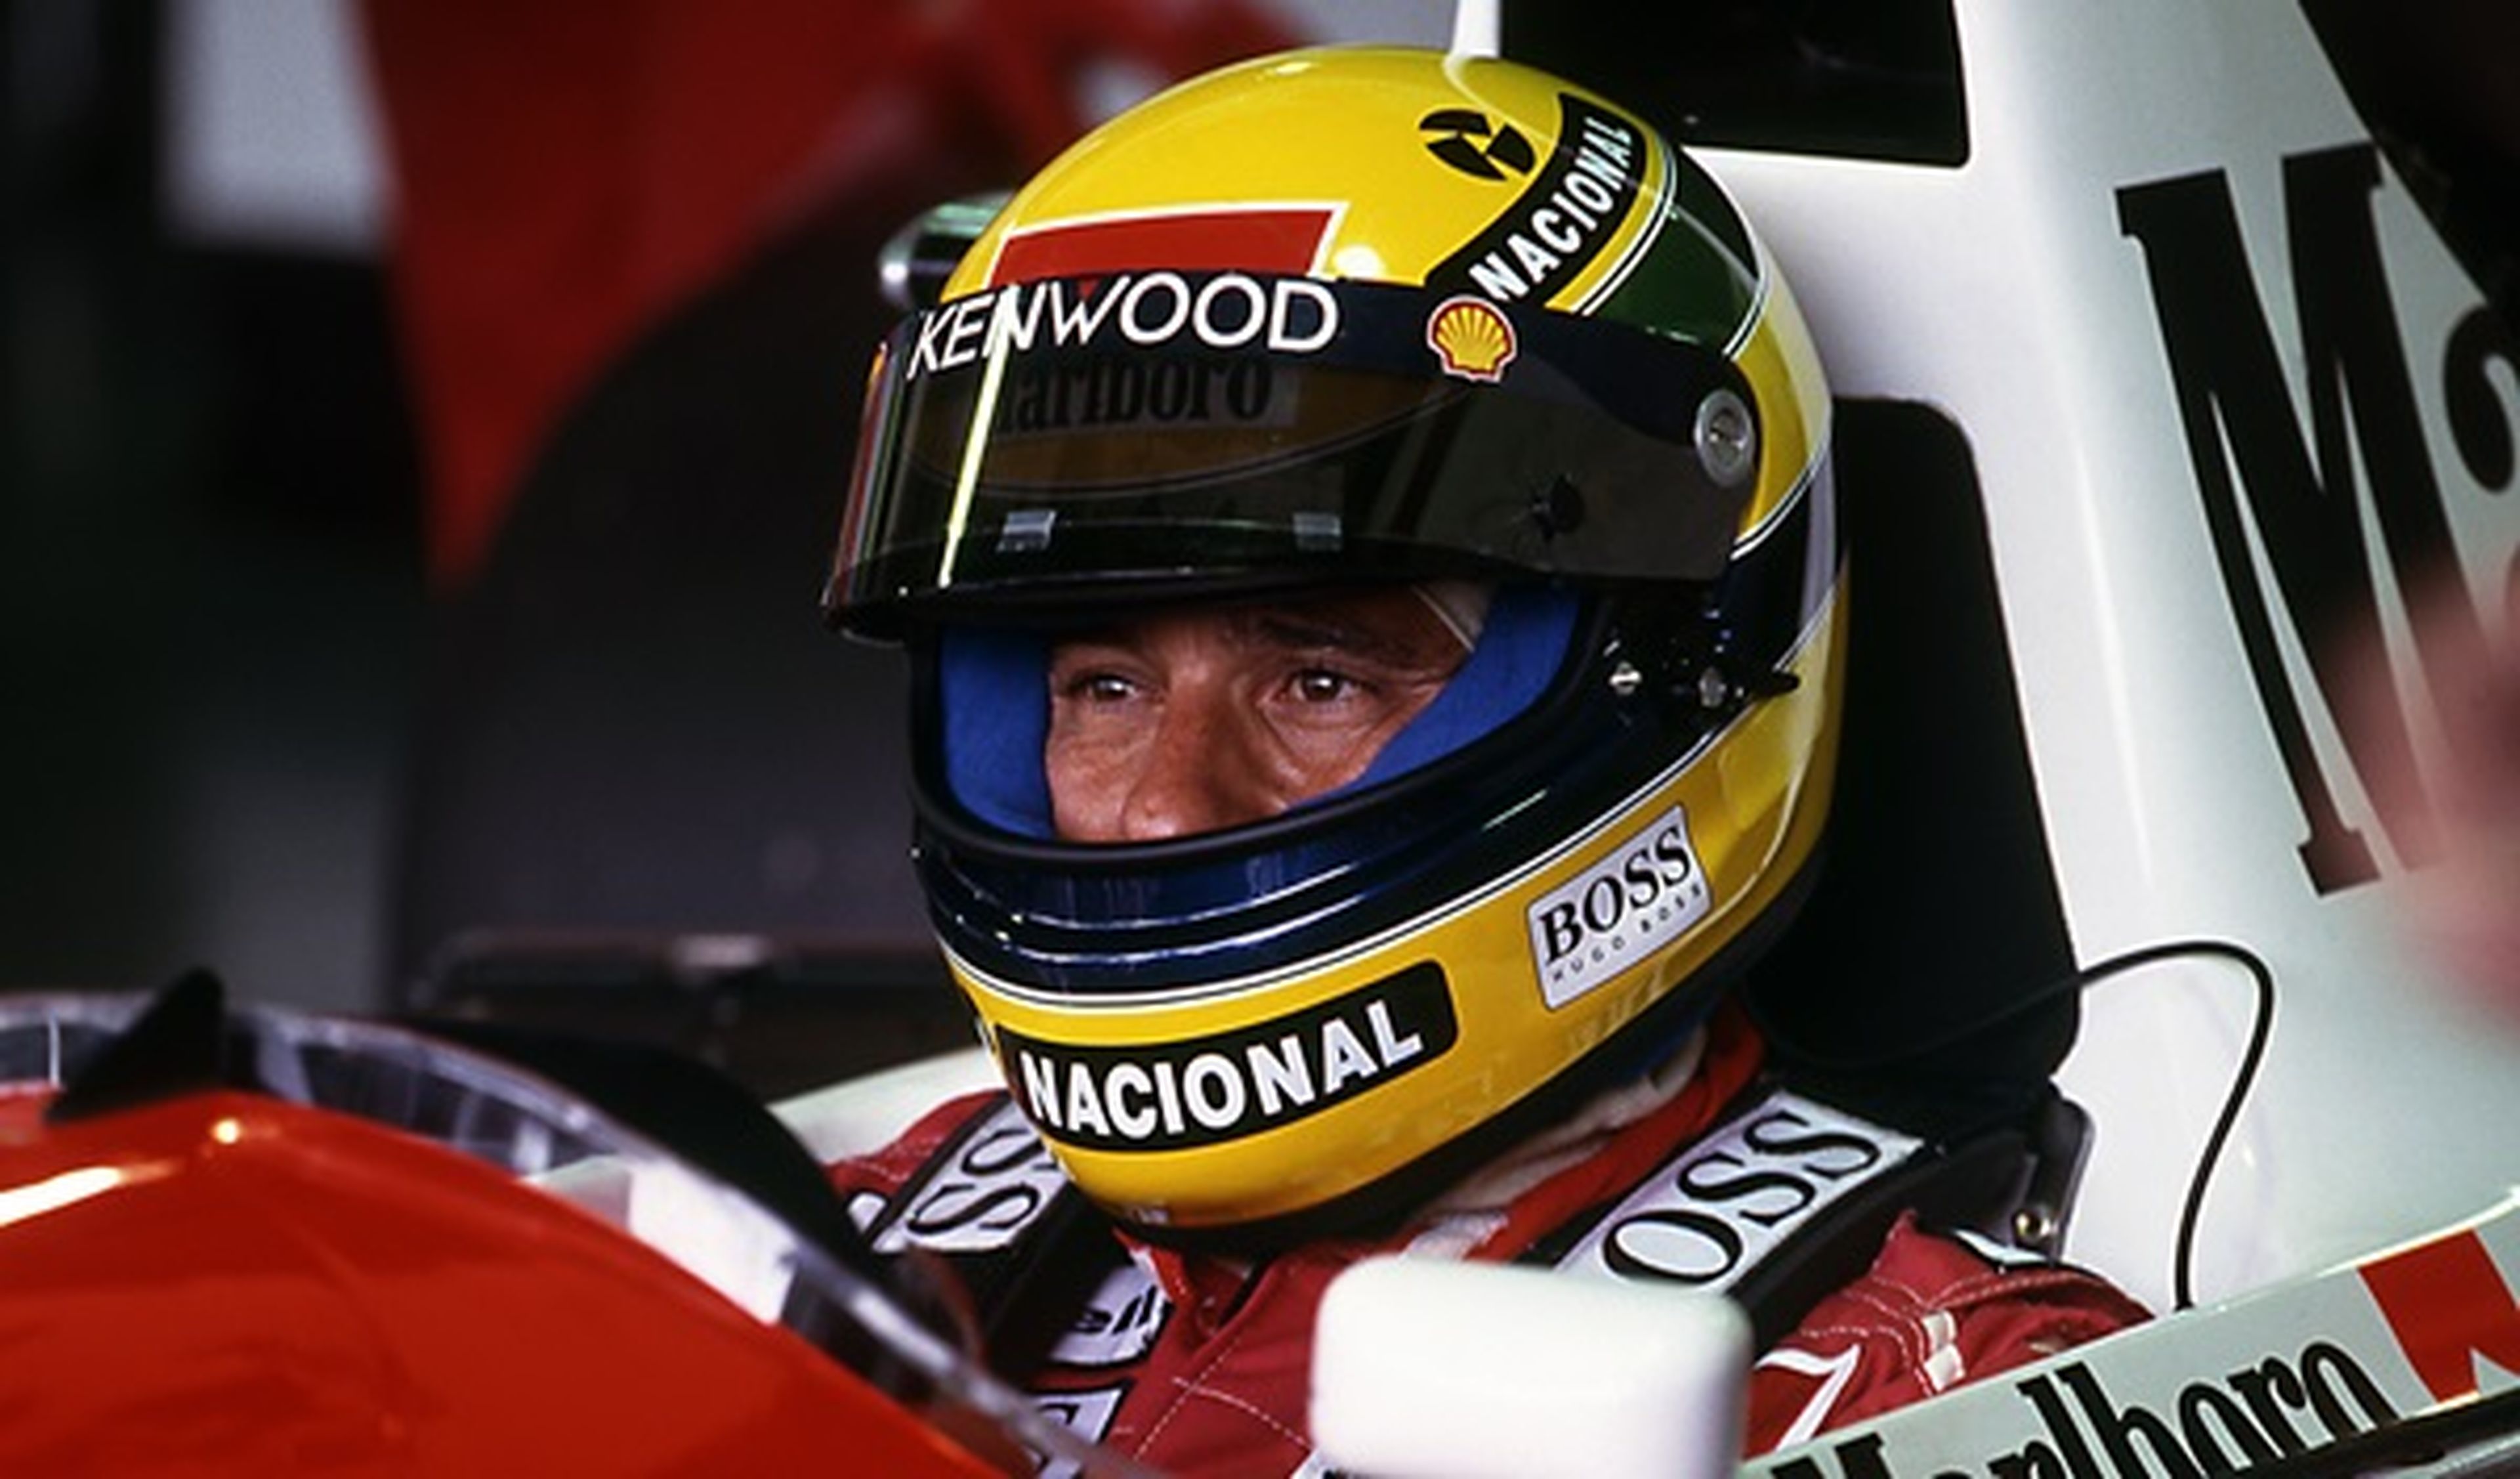 Vídeo inédito de Senna en el fatídico GP San Marino 1994